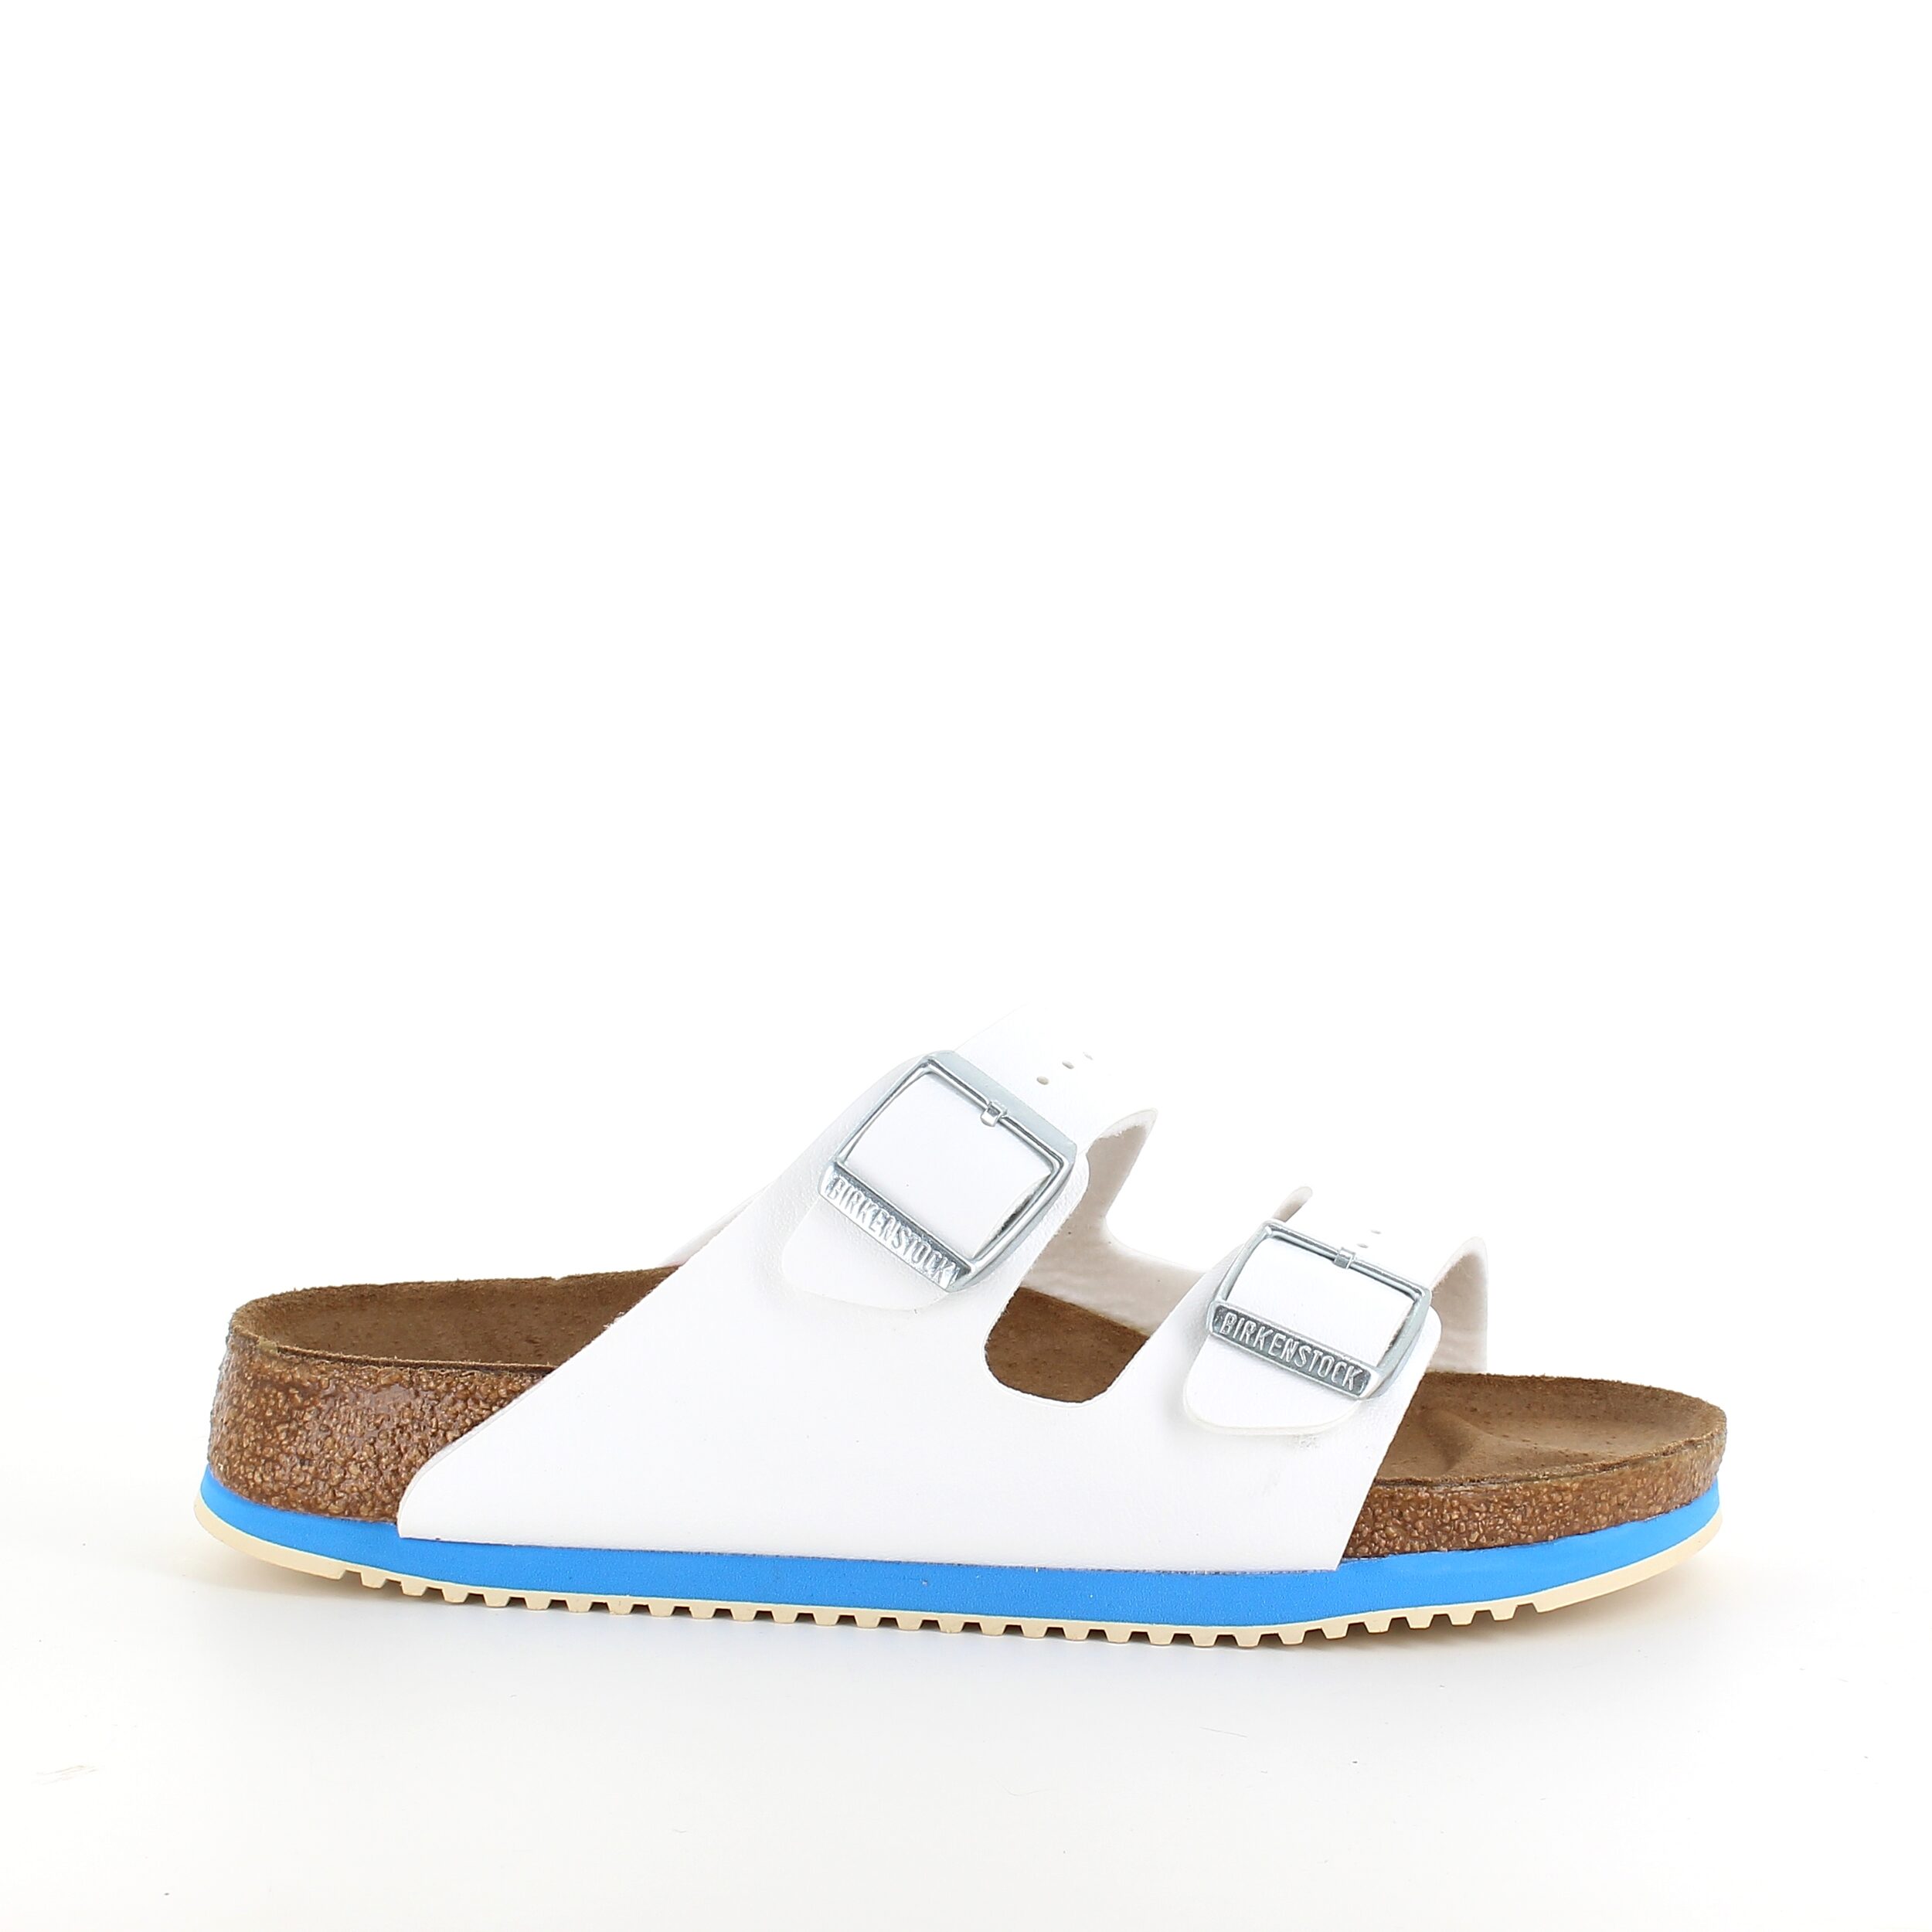 13: Hvid Arizona sandal fra Birkenstock med godkendte skridhæmmende såler - 47